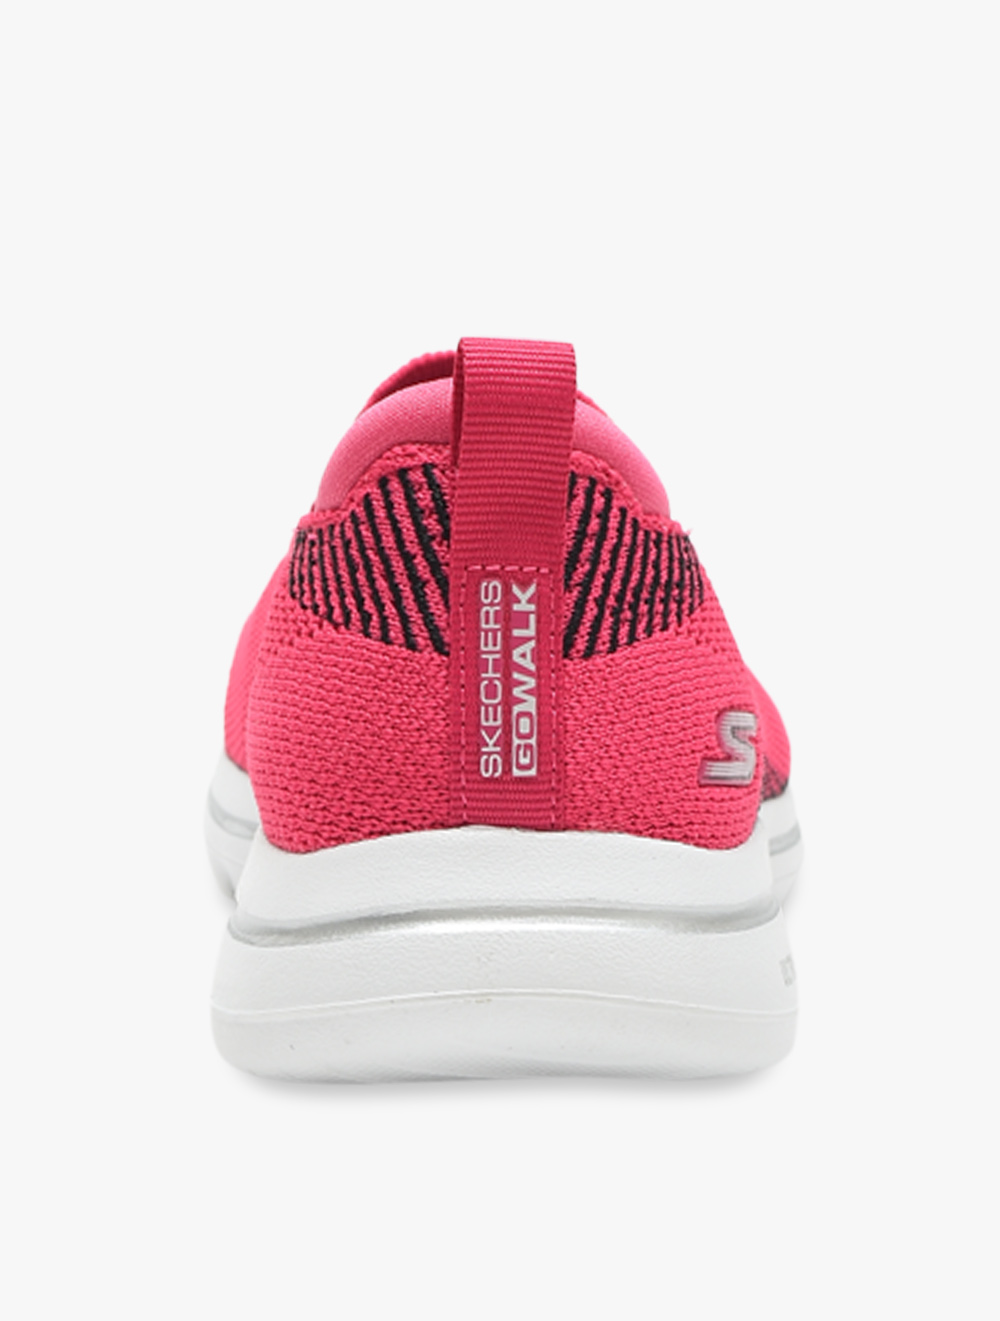 Skechers GOwalk 5 - Prized Womens Walking Shoes - Pink